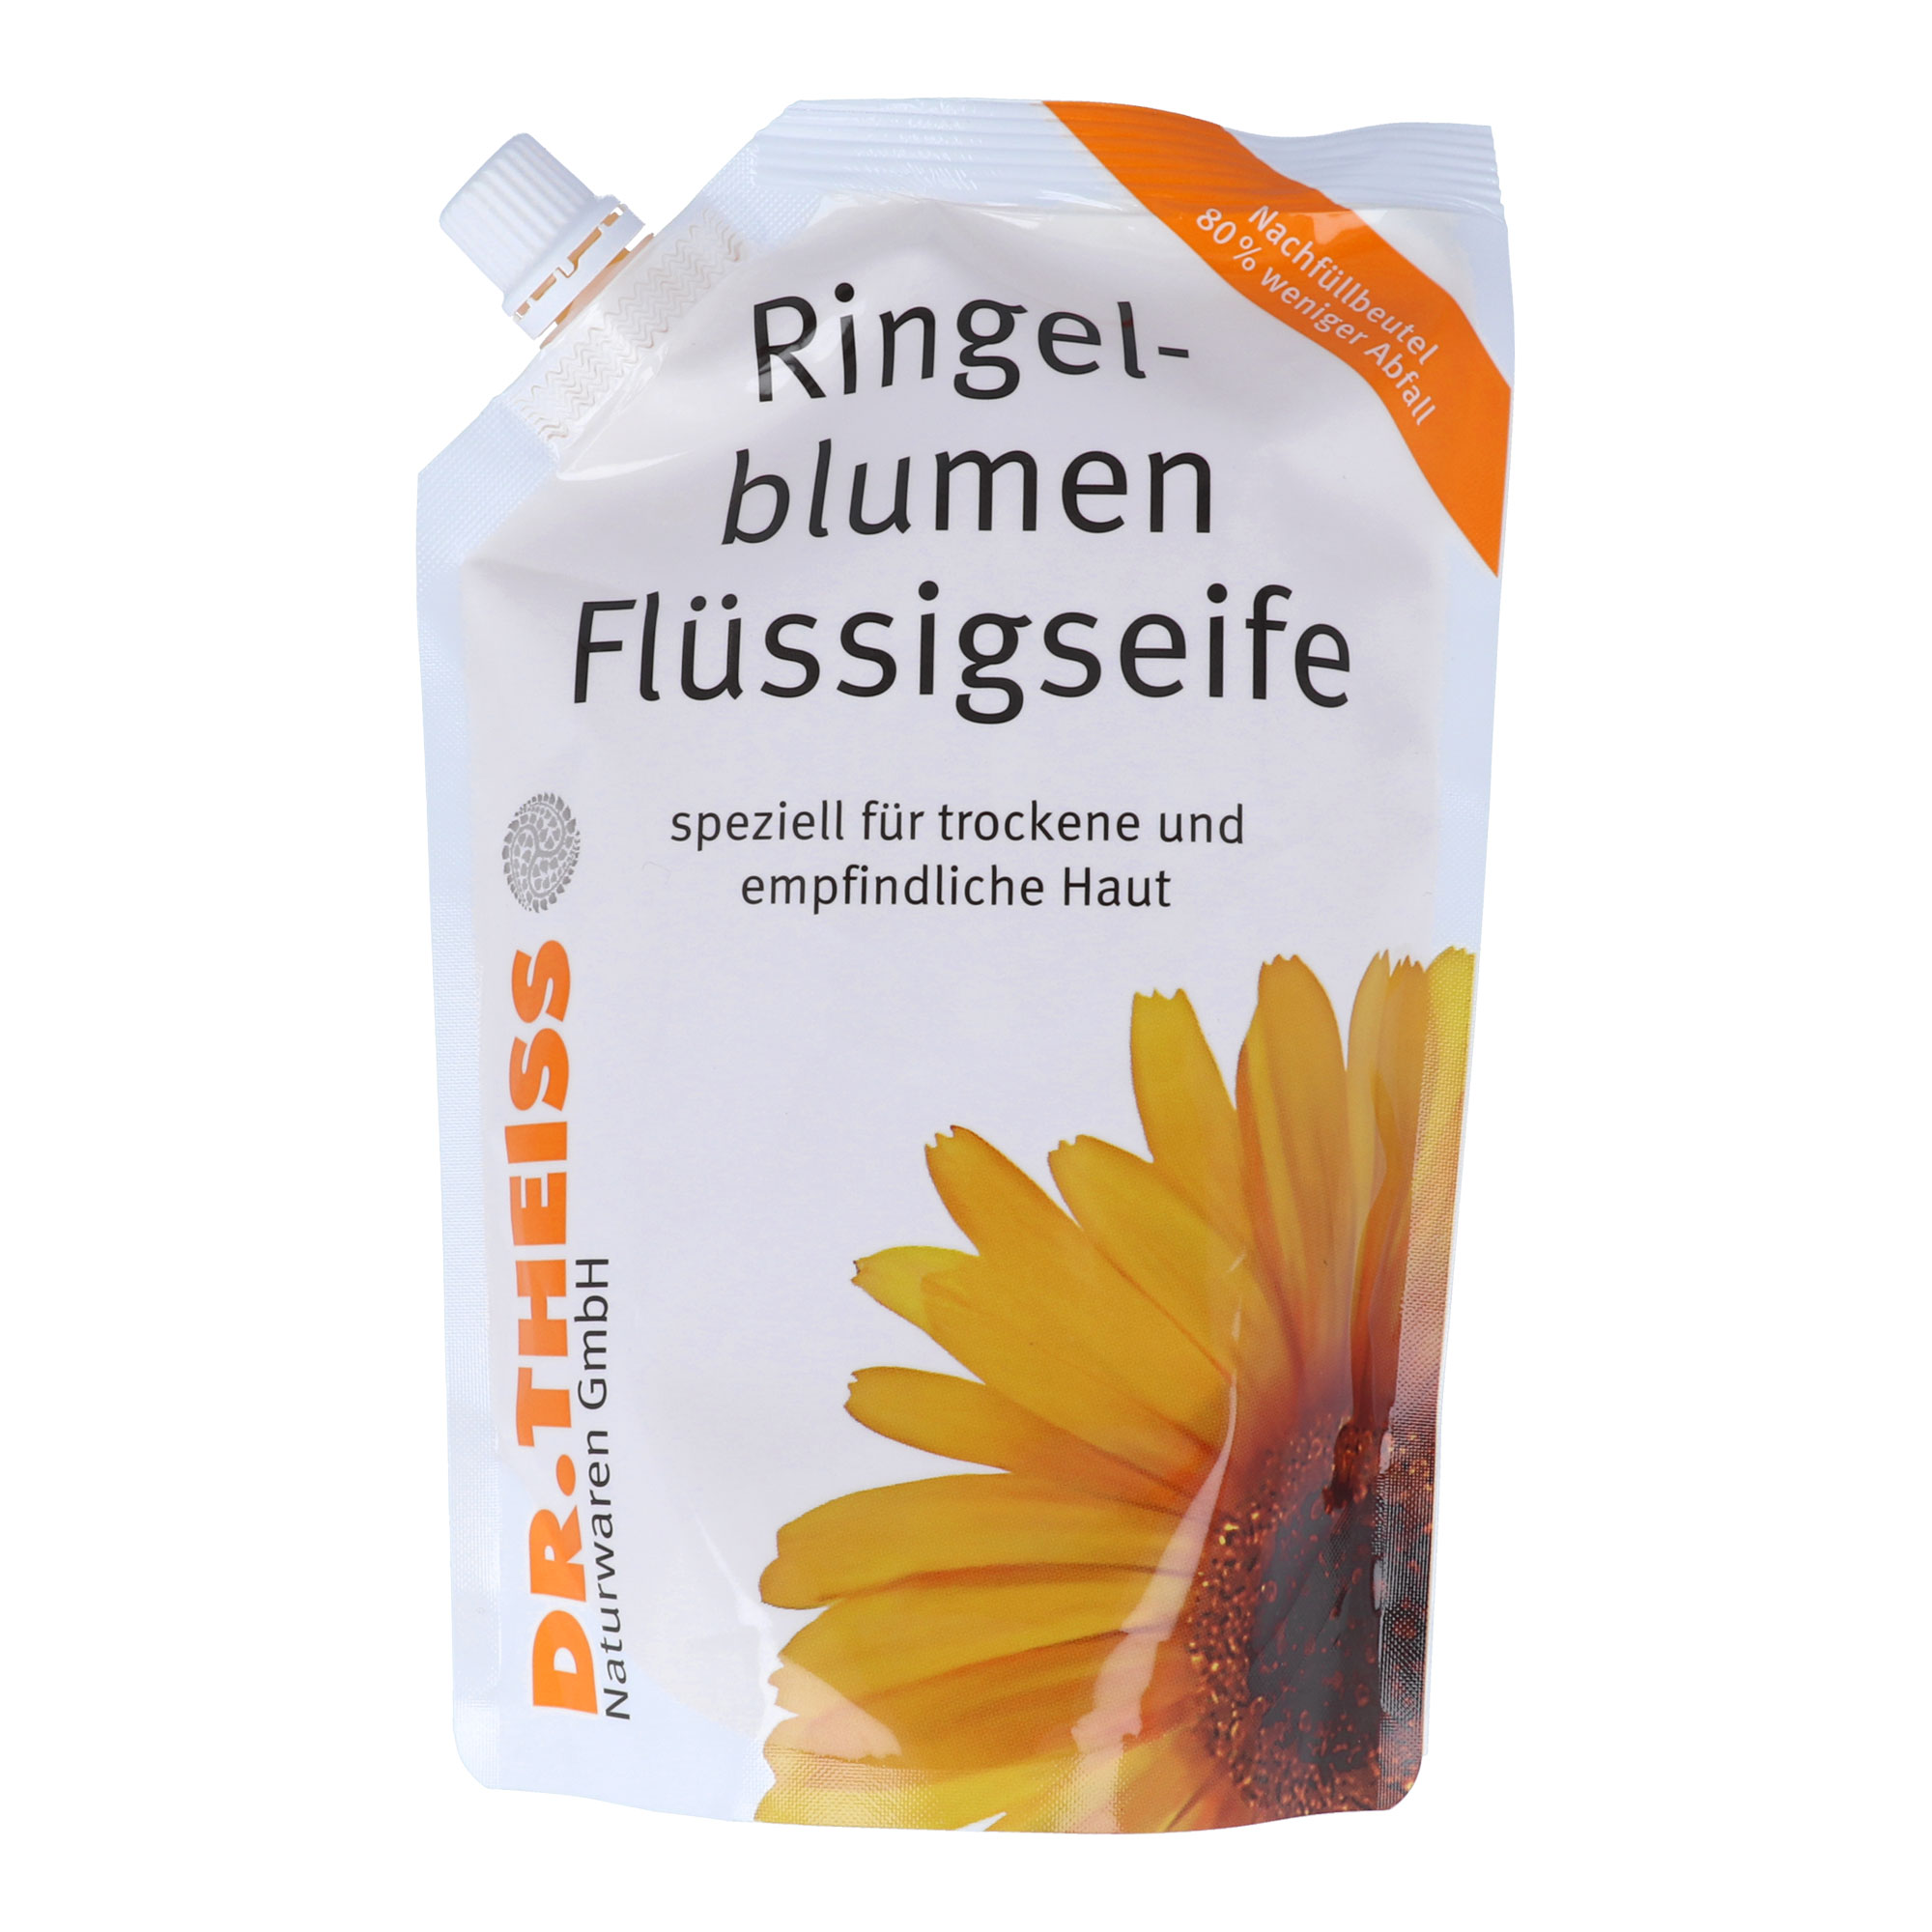 Hautpflegende Extrakte der Ringelblume schonen besonders empfindliche Haut. Wirkt rückfettend.